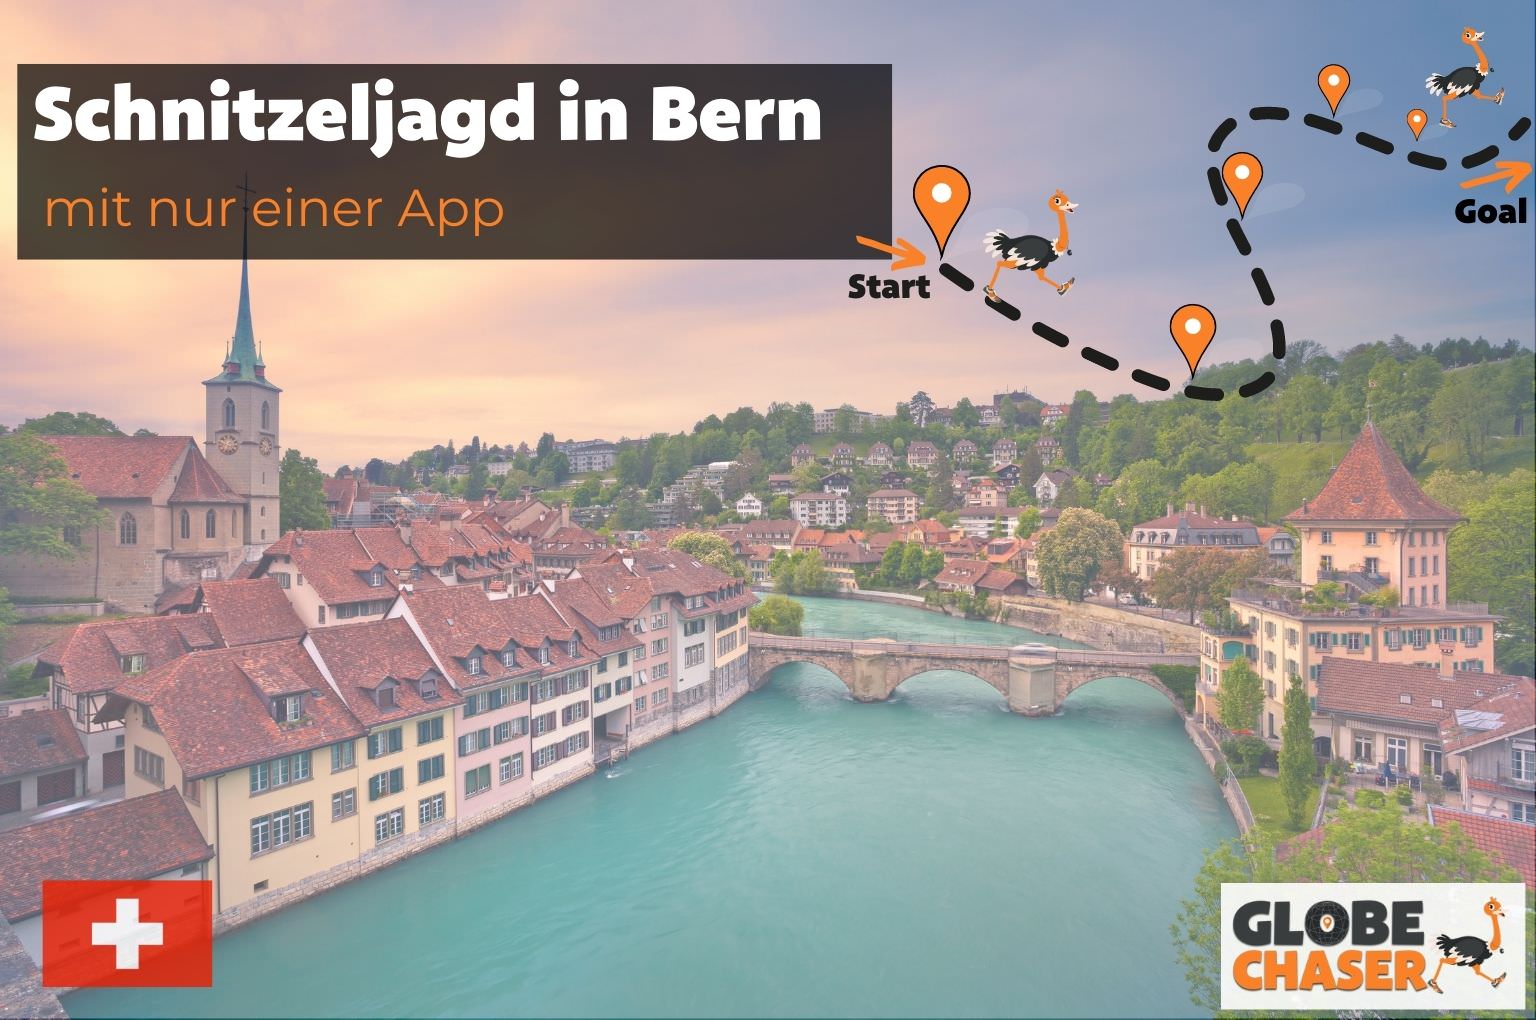 Schnitzeljagd in Bern mit App - Globe Chaser Erlebnisse Schweiz